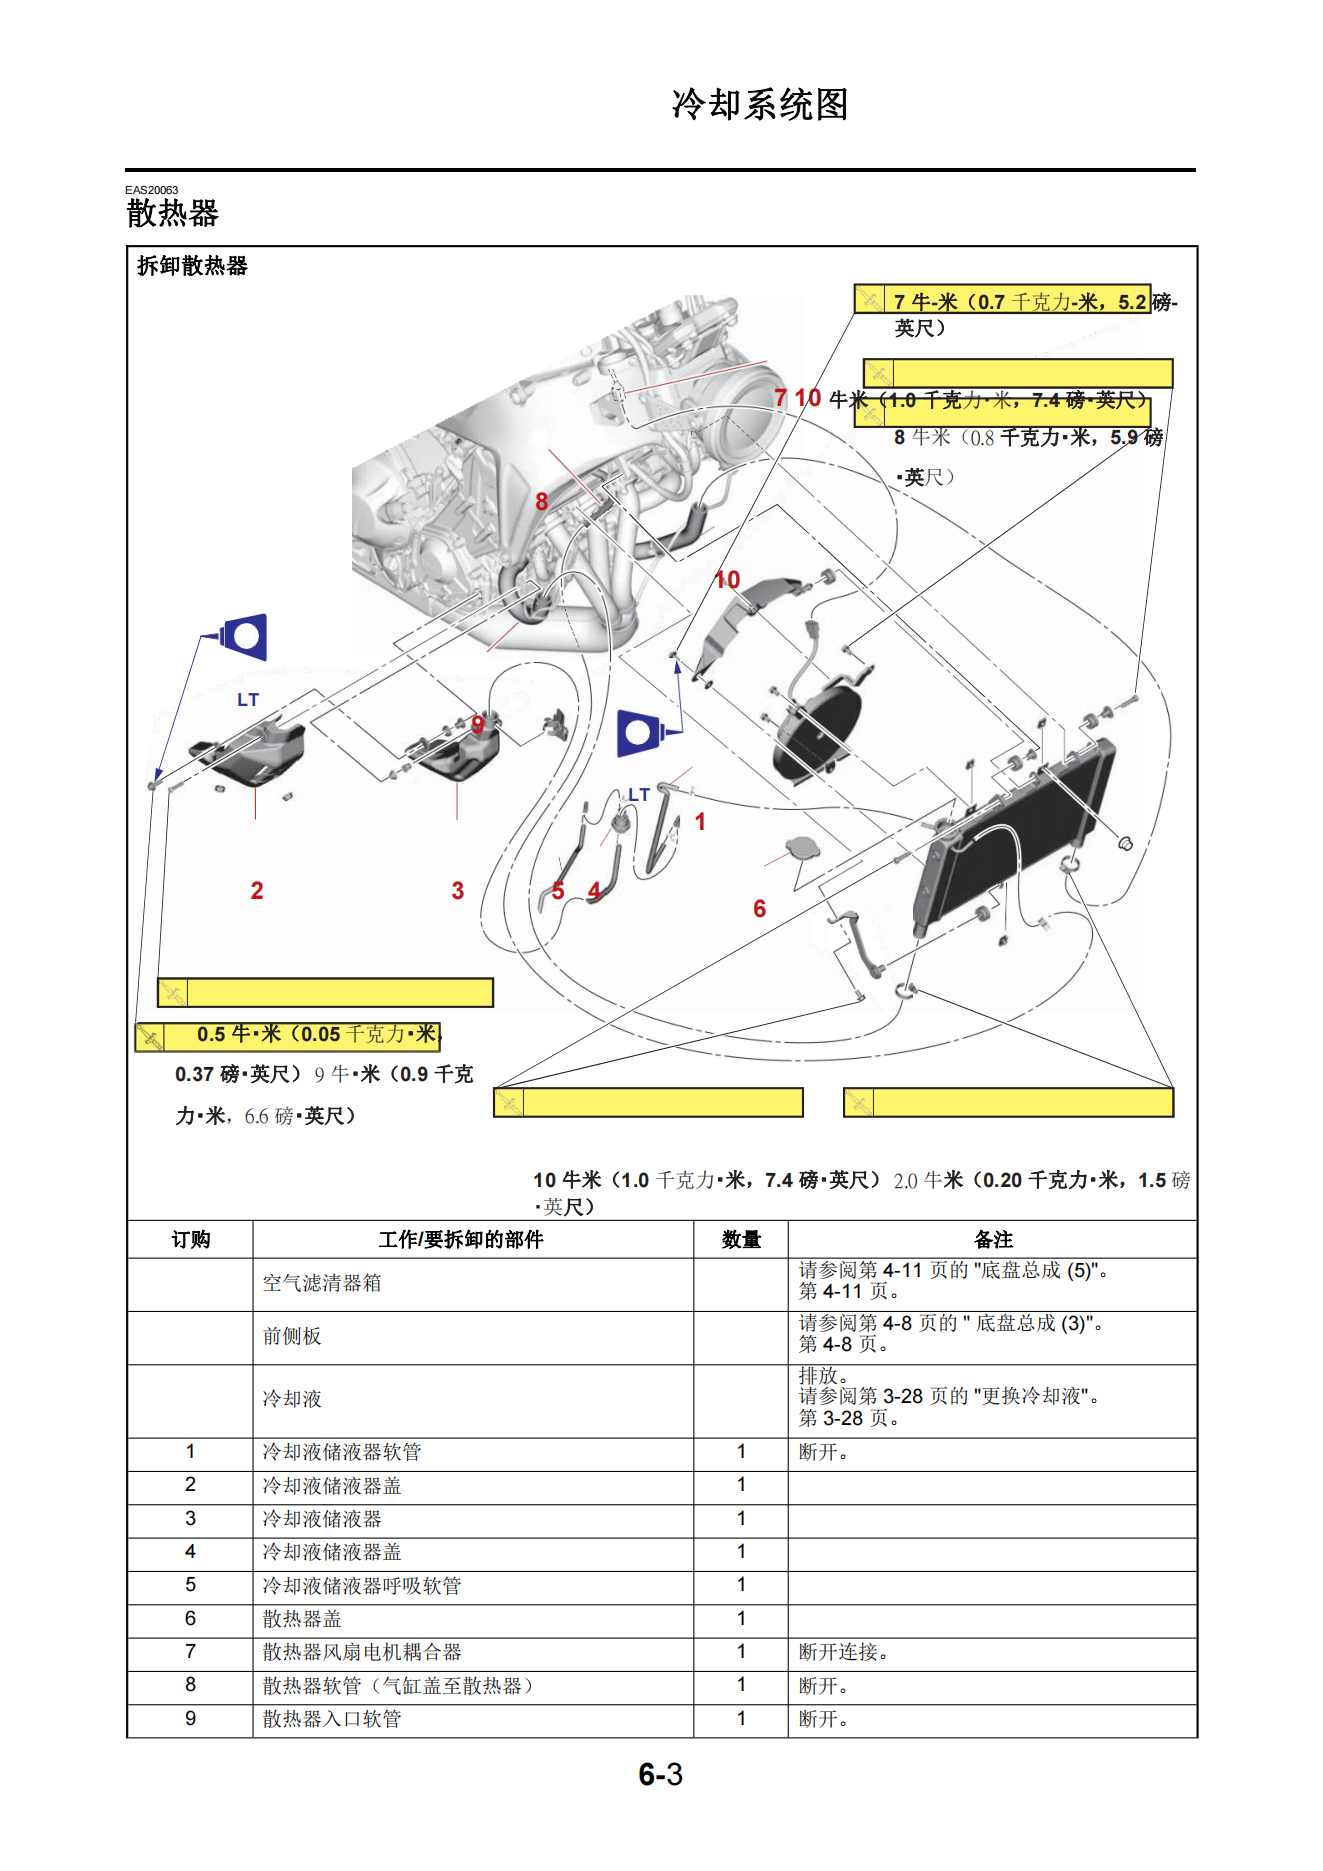 简体中文2022-2024年雅马哈xs900r维修手册xsr900维修手册插图3